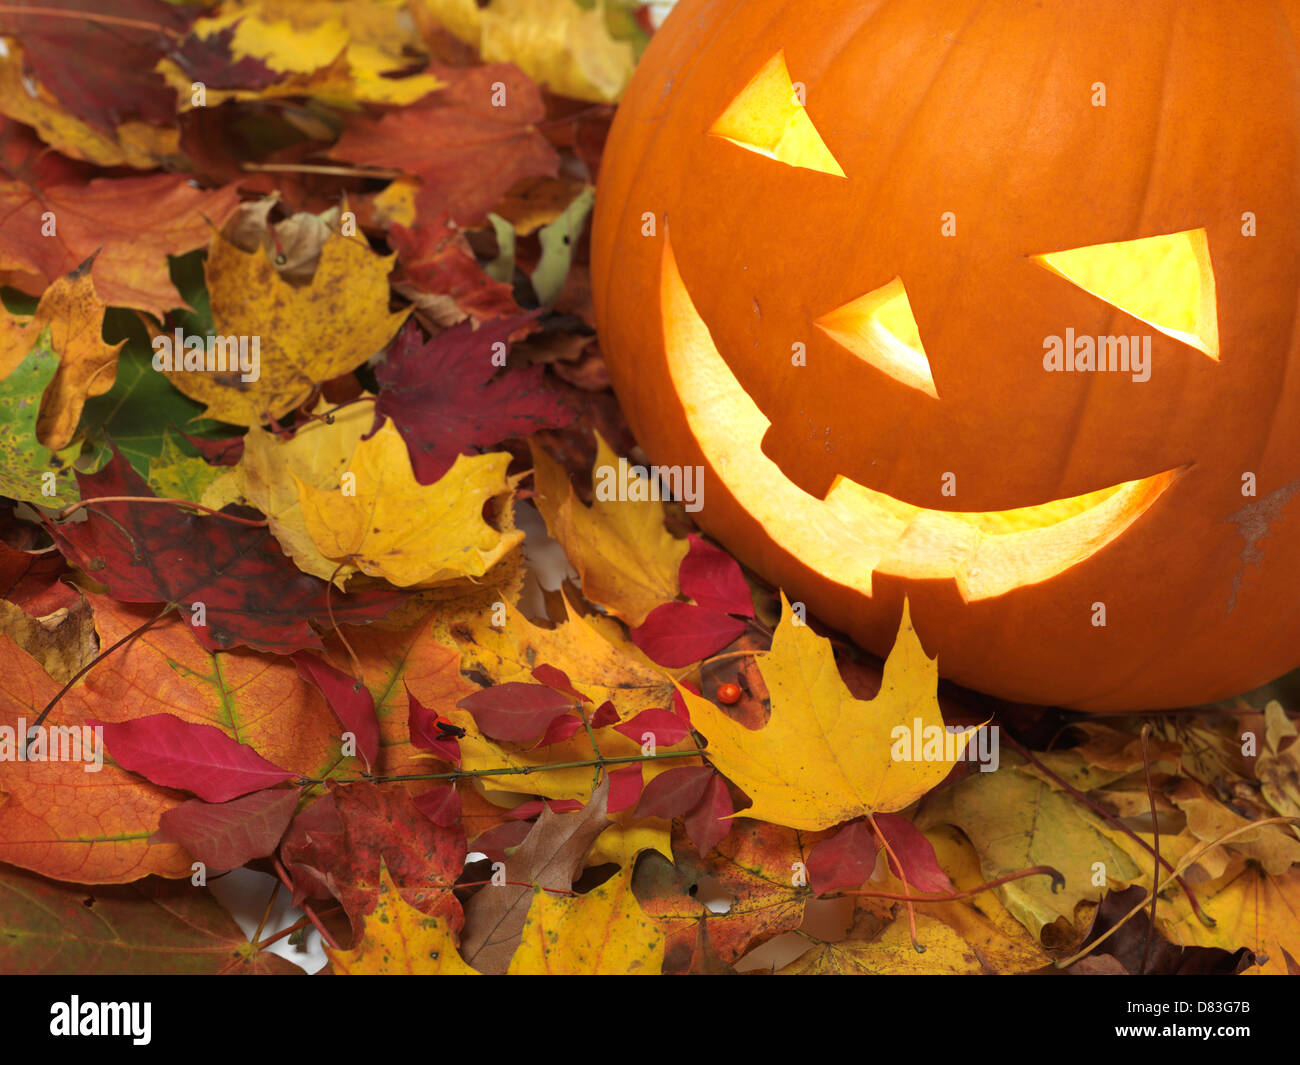 Calabazas sonrientes talladas en las coloridas hojas caer. Jack-o'-lantern símbolo de Halloween. Foto de stock